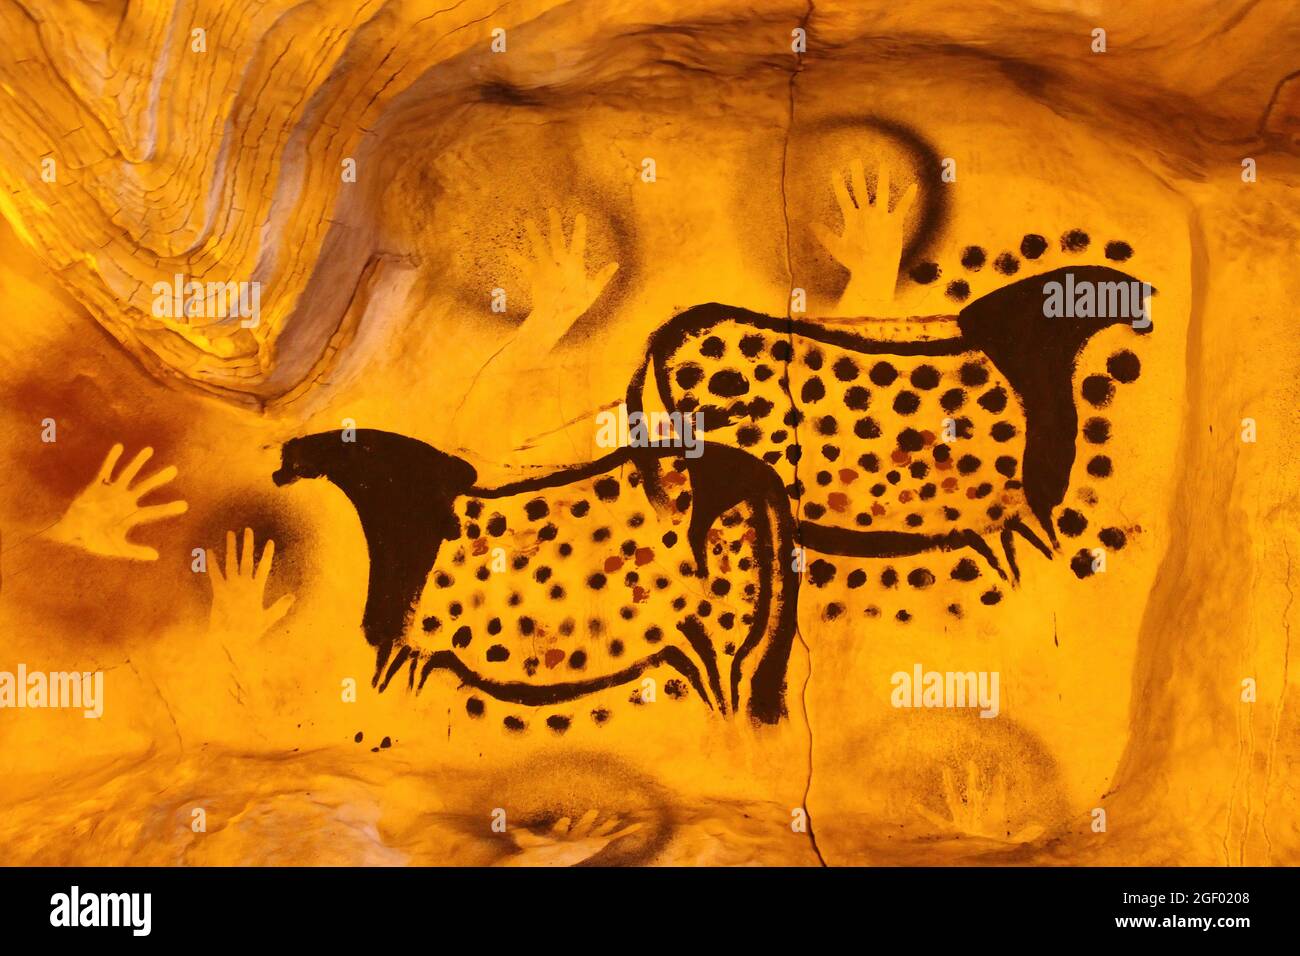 Ricostruzione moderna della Grotta Preistorica con arte raffigurante cavalli macchiati / appliti di Peche Merle e stampe a mano Foto Stock